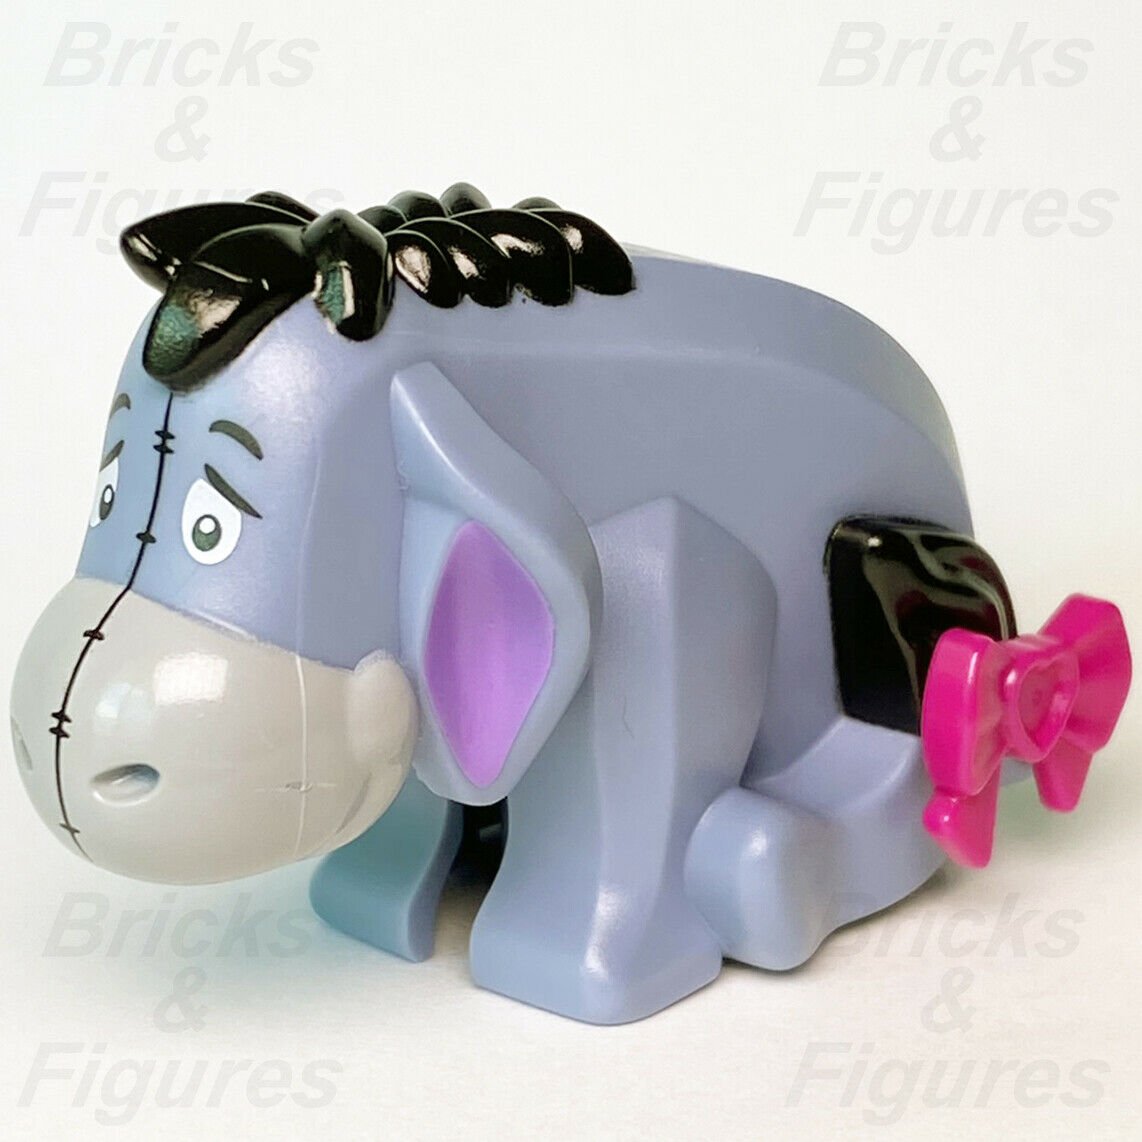 New Ideas LEGO Eeyore CUUSOO Winnie the Pooh Donkey Minifigure 21326 idea090 - Bricks & Figures